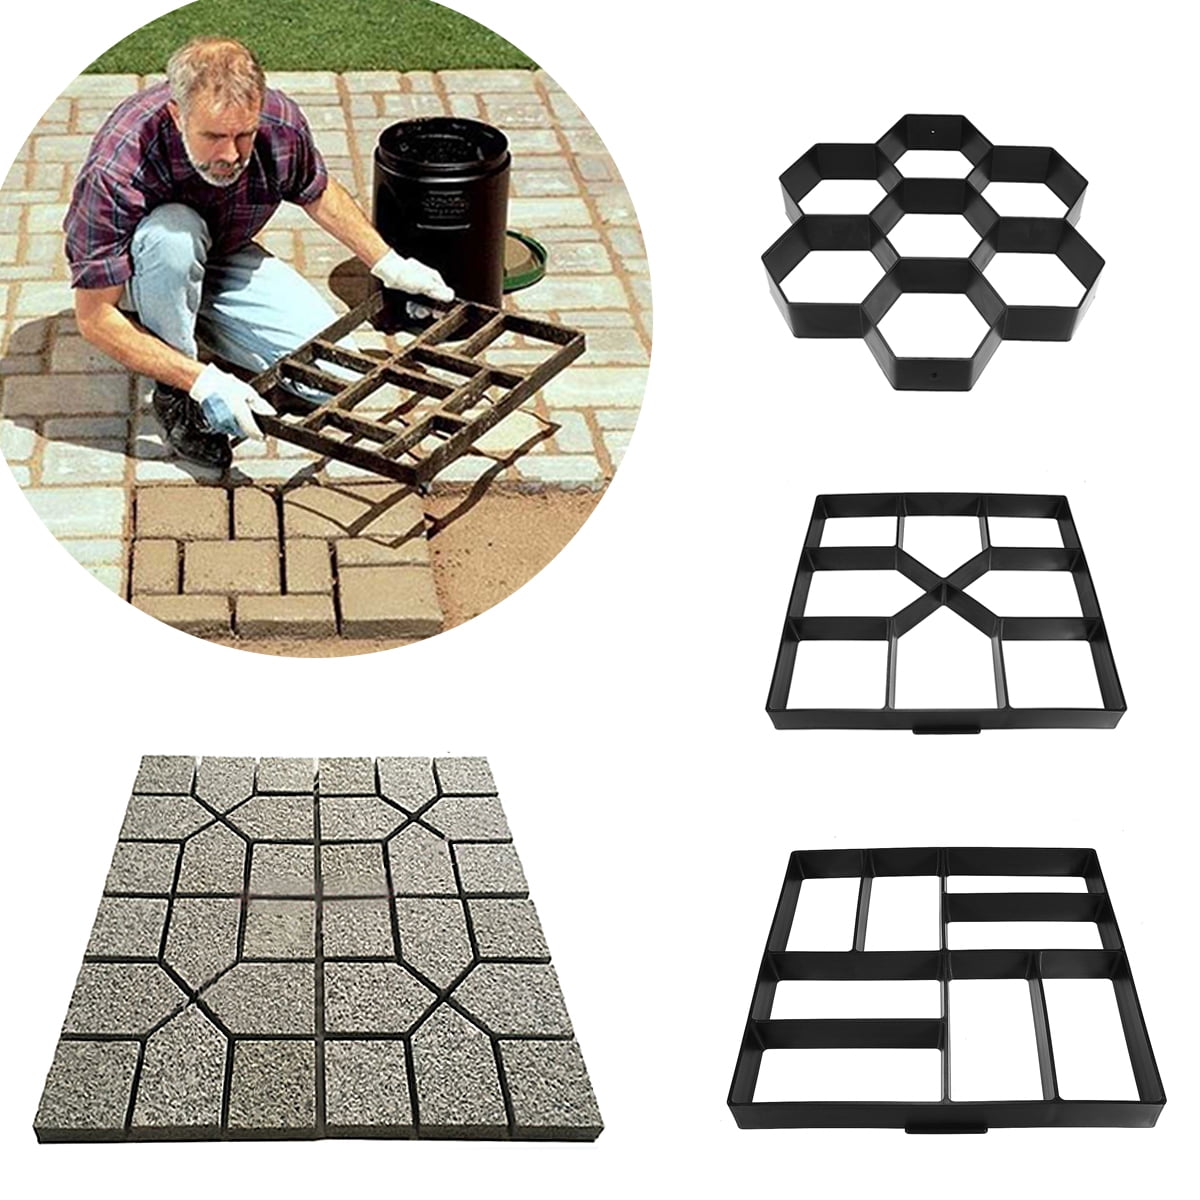 Pavement Mold Cellular Paving Stone Concrete Mould Garden DIY Path Maker Brick 